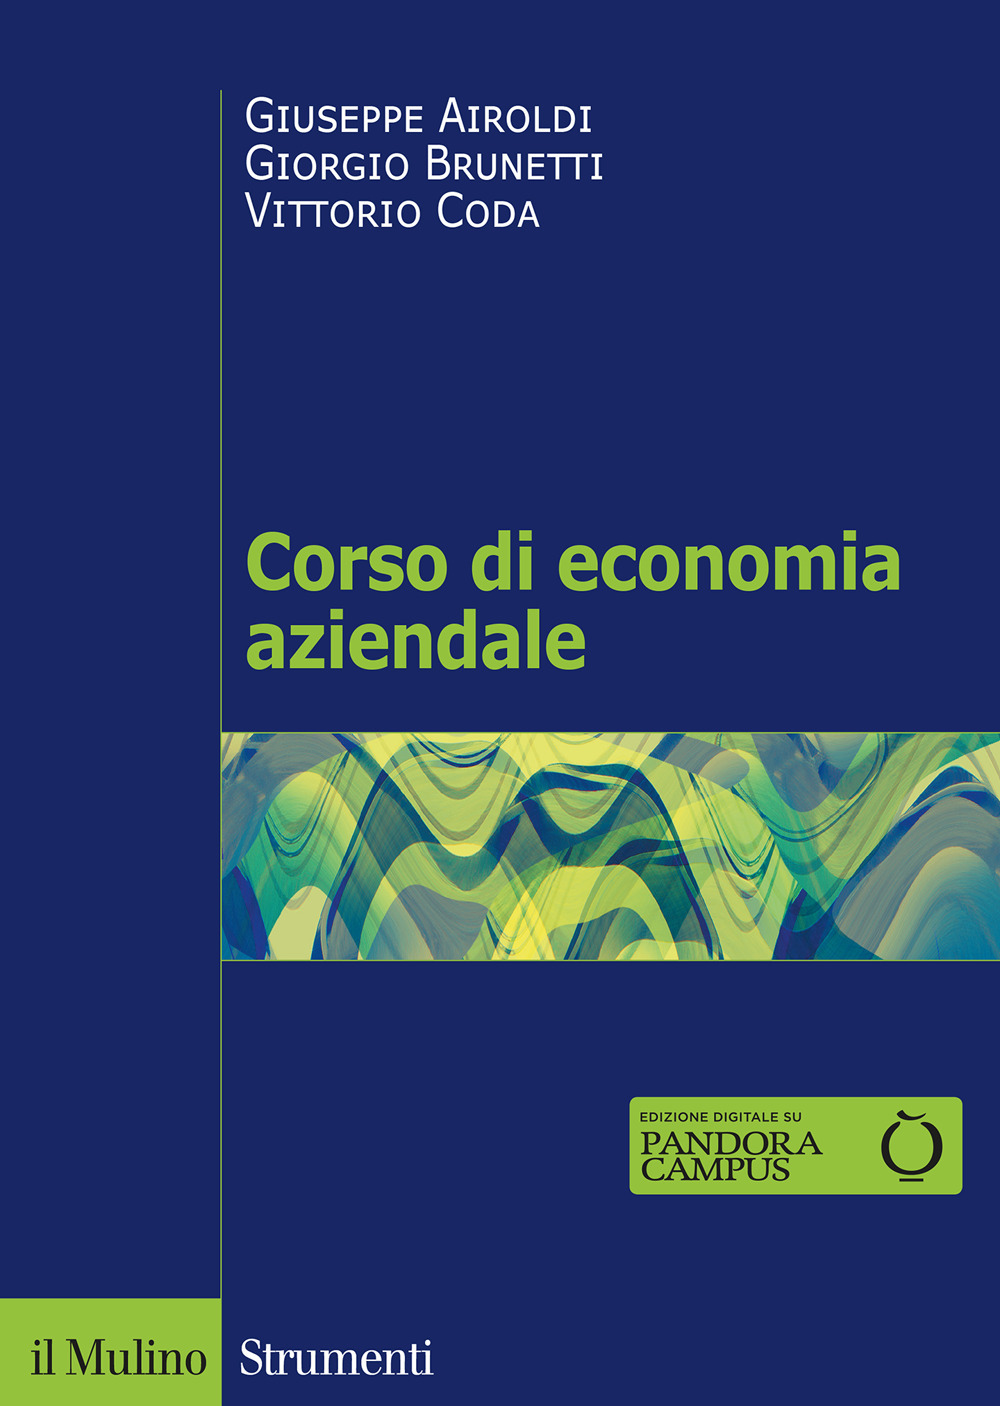 Libri Giuseppe Airoldi / Giorgio Brunetti / Vittorio Coda - Corso Di Economia Aziendale NUOVO SIGILLATO, EDIZIONE DEL 05/08/2020 SUBITO DISPONIBILE